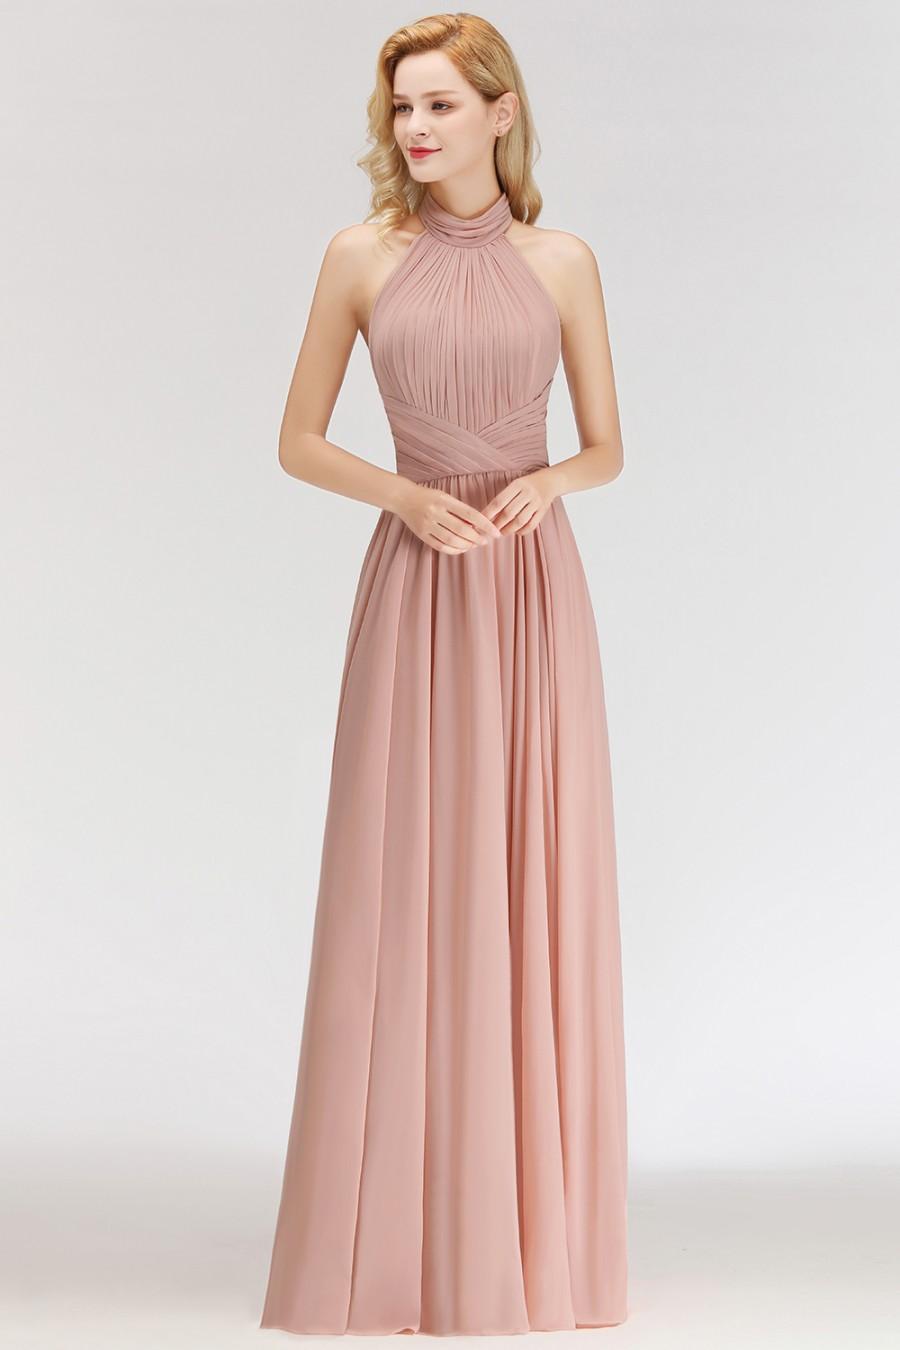 Wedding - Modern Rosa Long Chiffon Brautjungfernkleider Etuikleid Kleider für Brautjunfern Modellnummer: BM0043